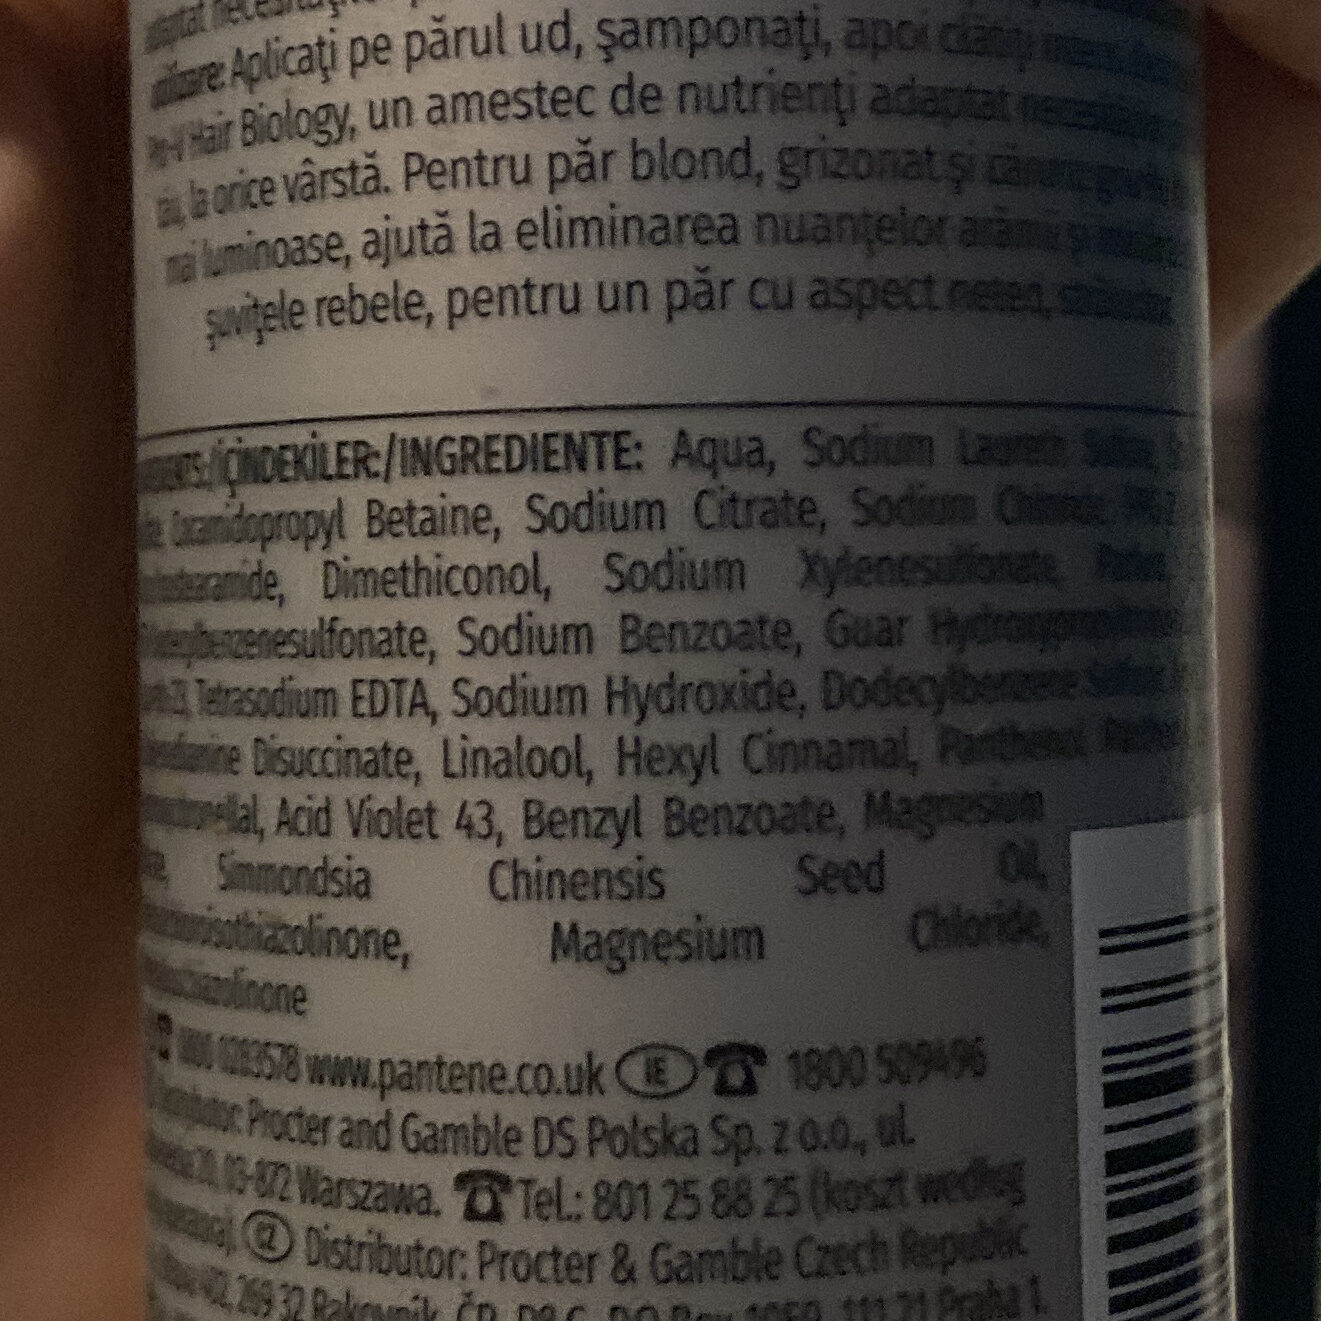 Hair biology purple shampoo - Ingredients - en